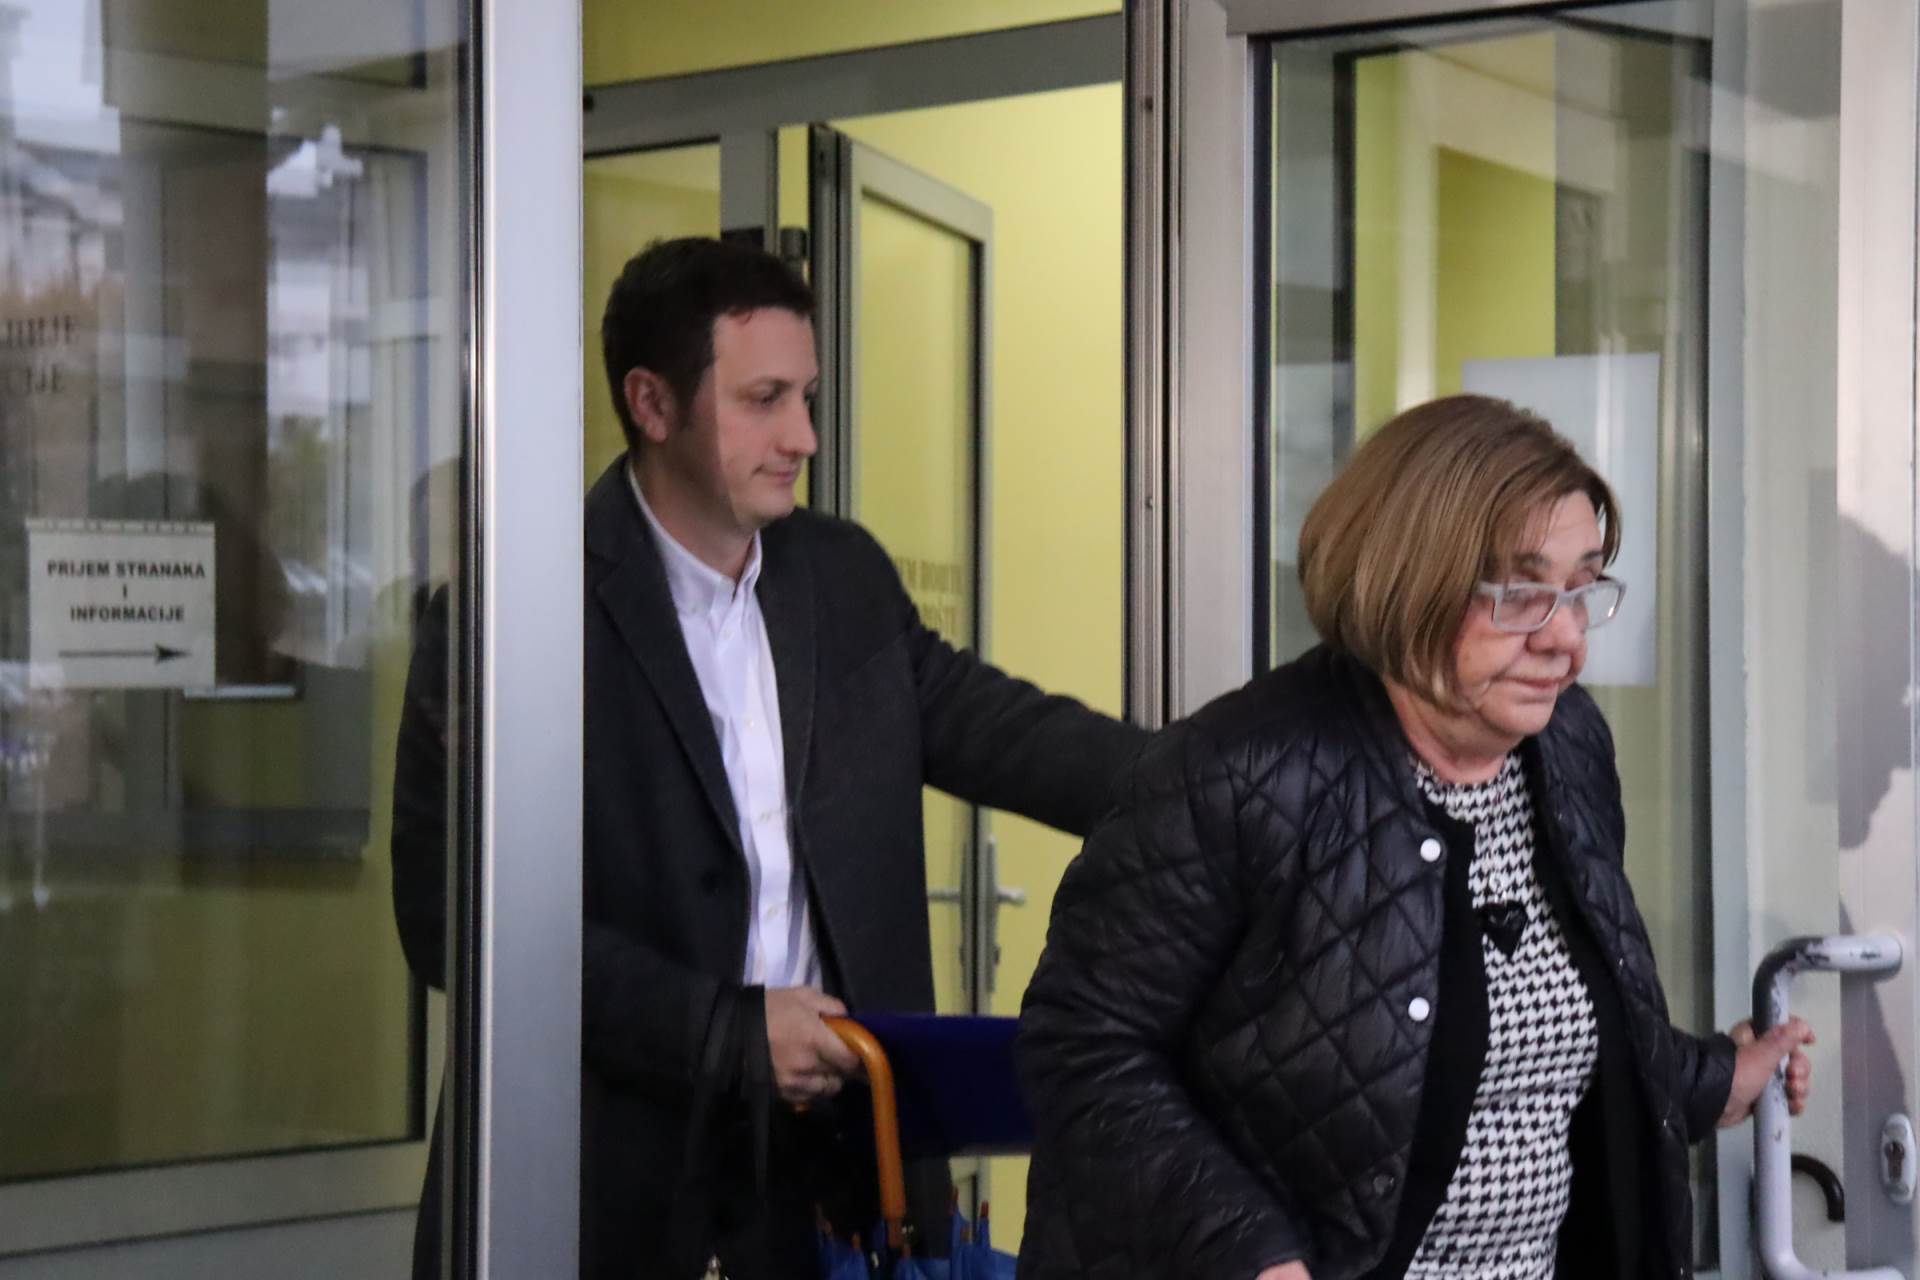  Suđenje Zeljkoviću počinje 6. februara 